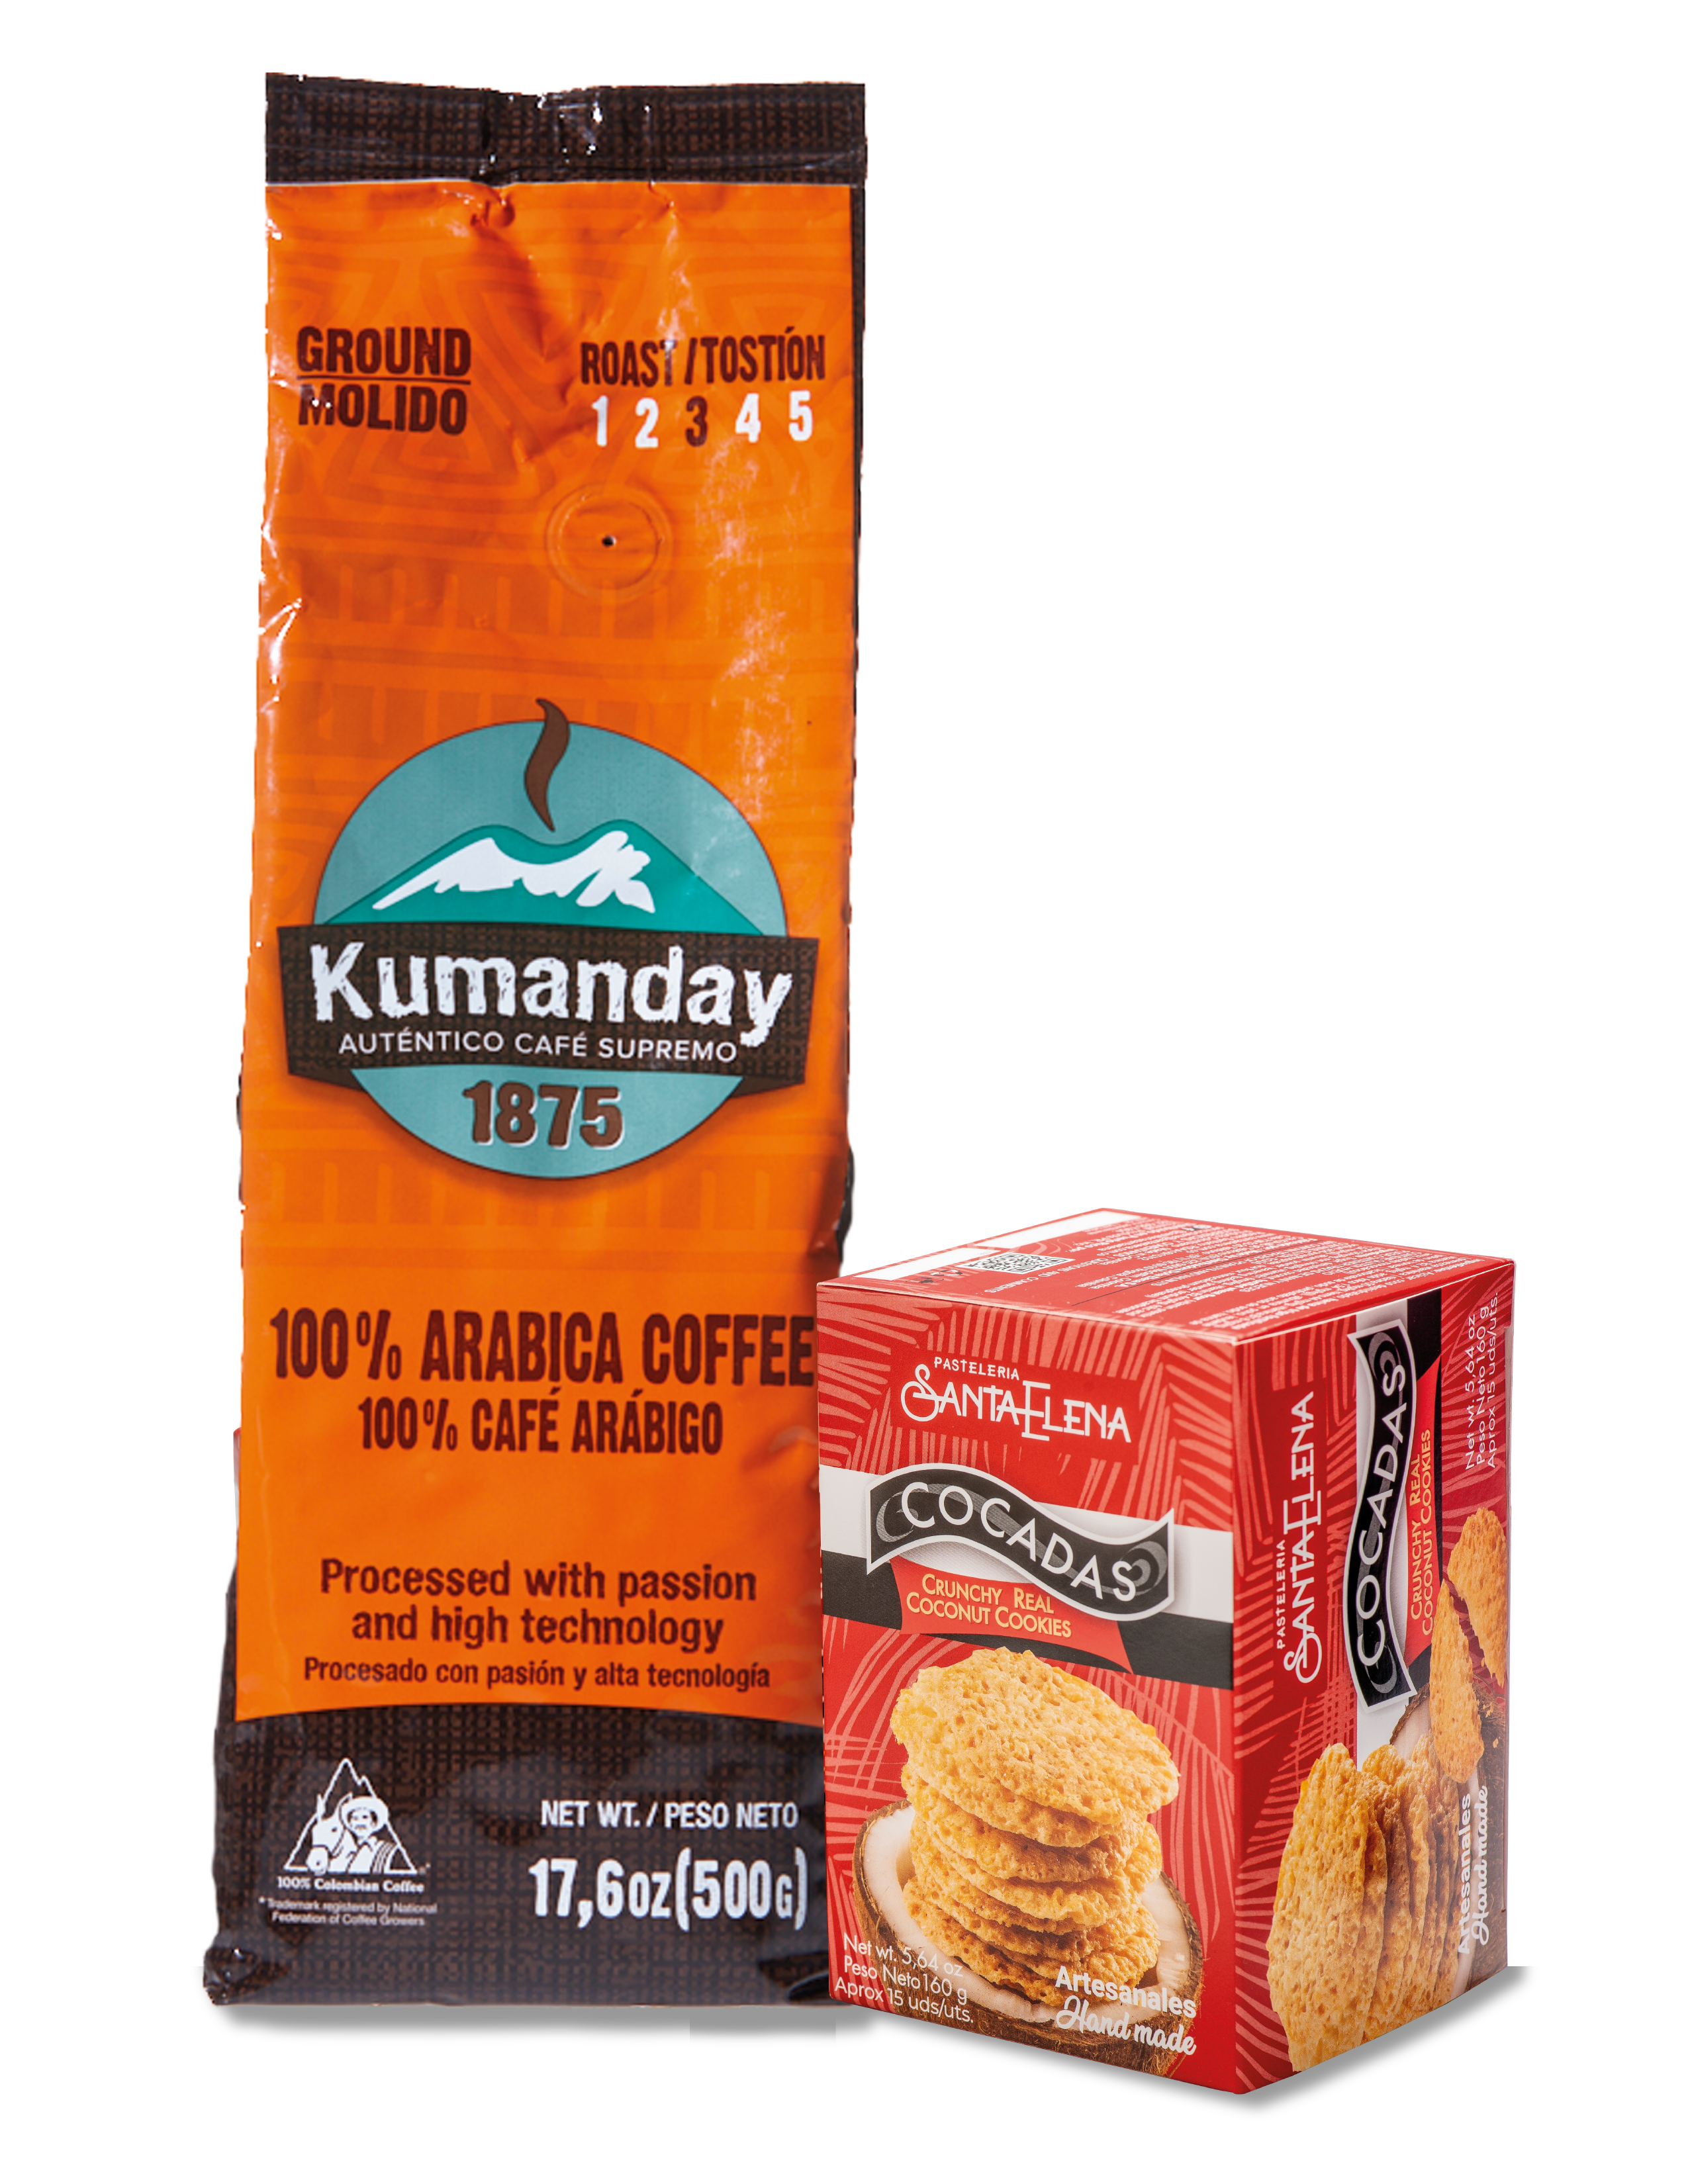 Pack Café Kumanday+ Cocadas Santa Elena (1 bolsa de café x 500 gramos + 1 caja de cocadas x 15 unidades)